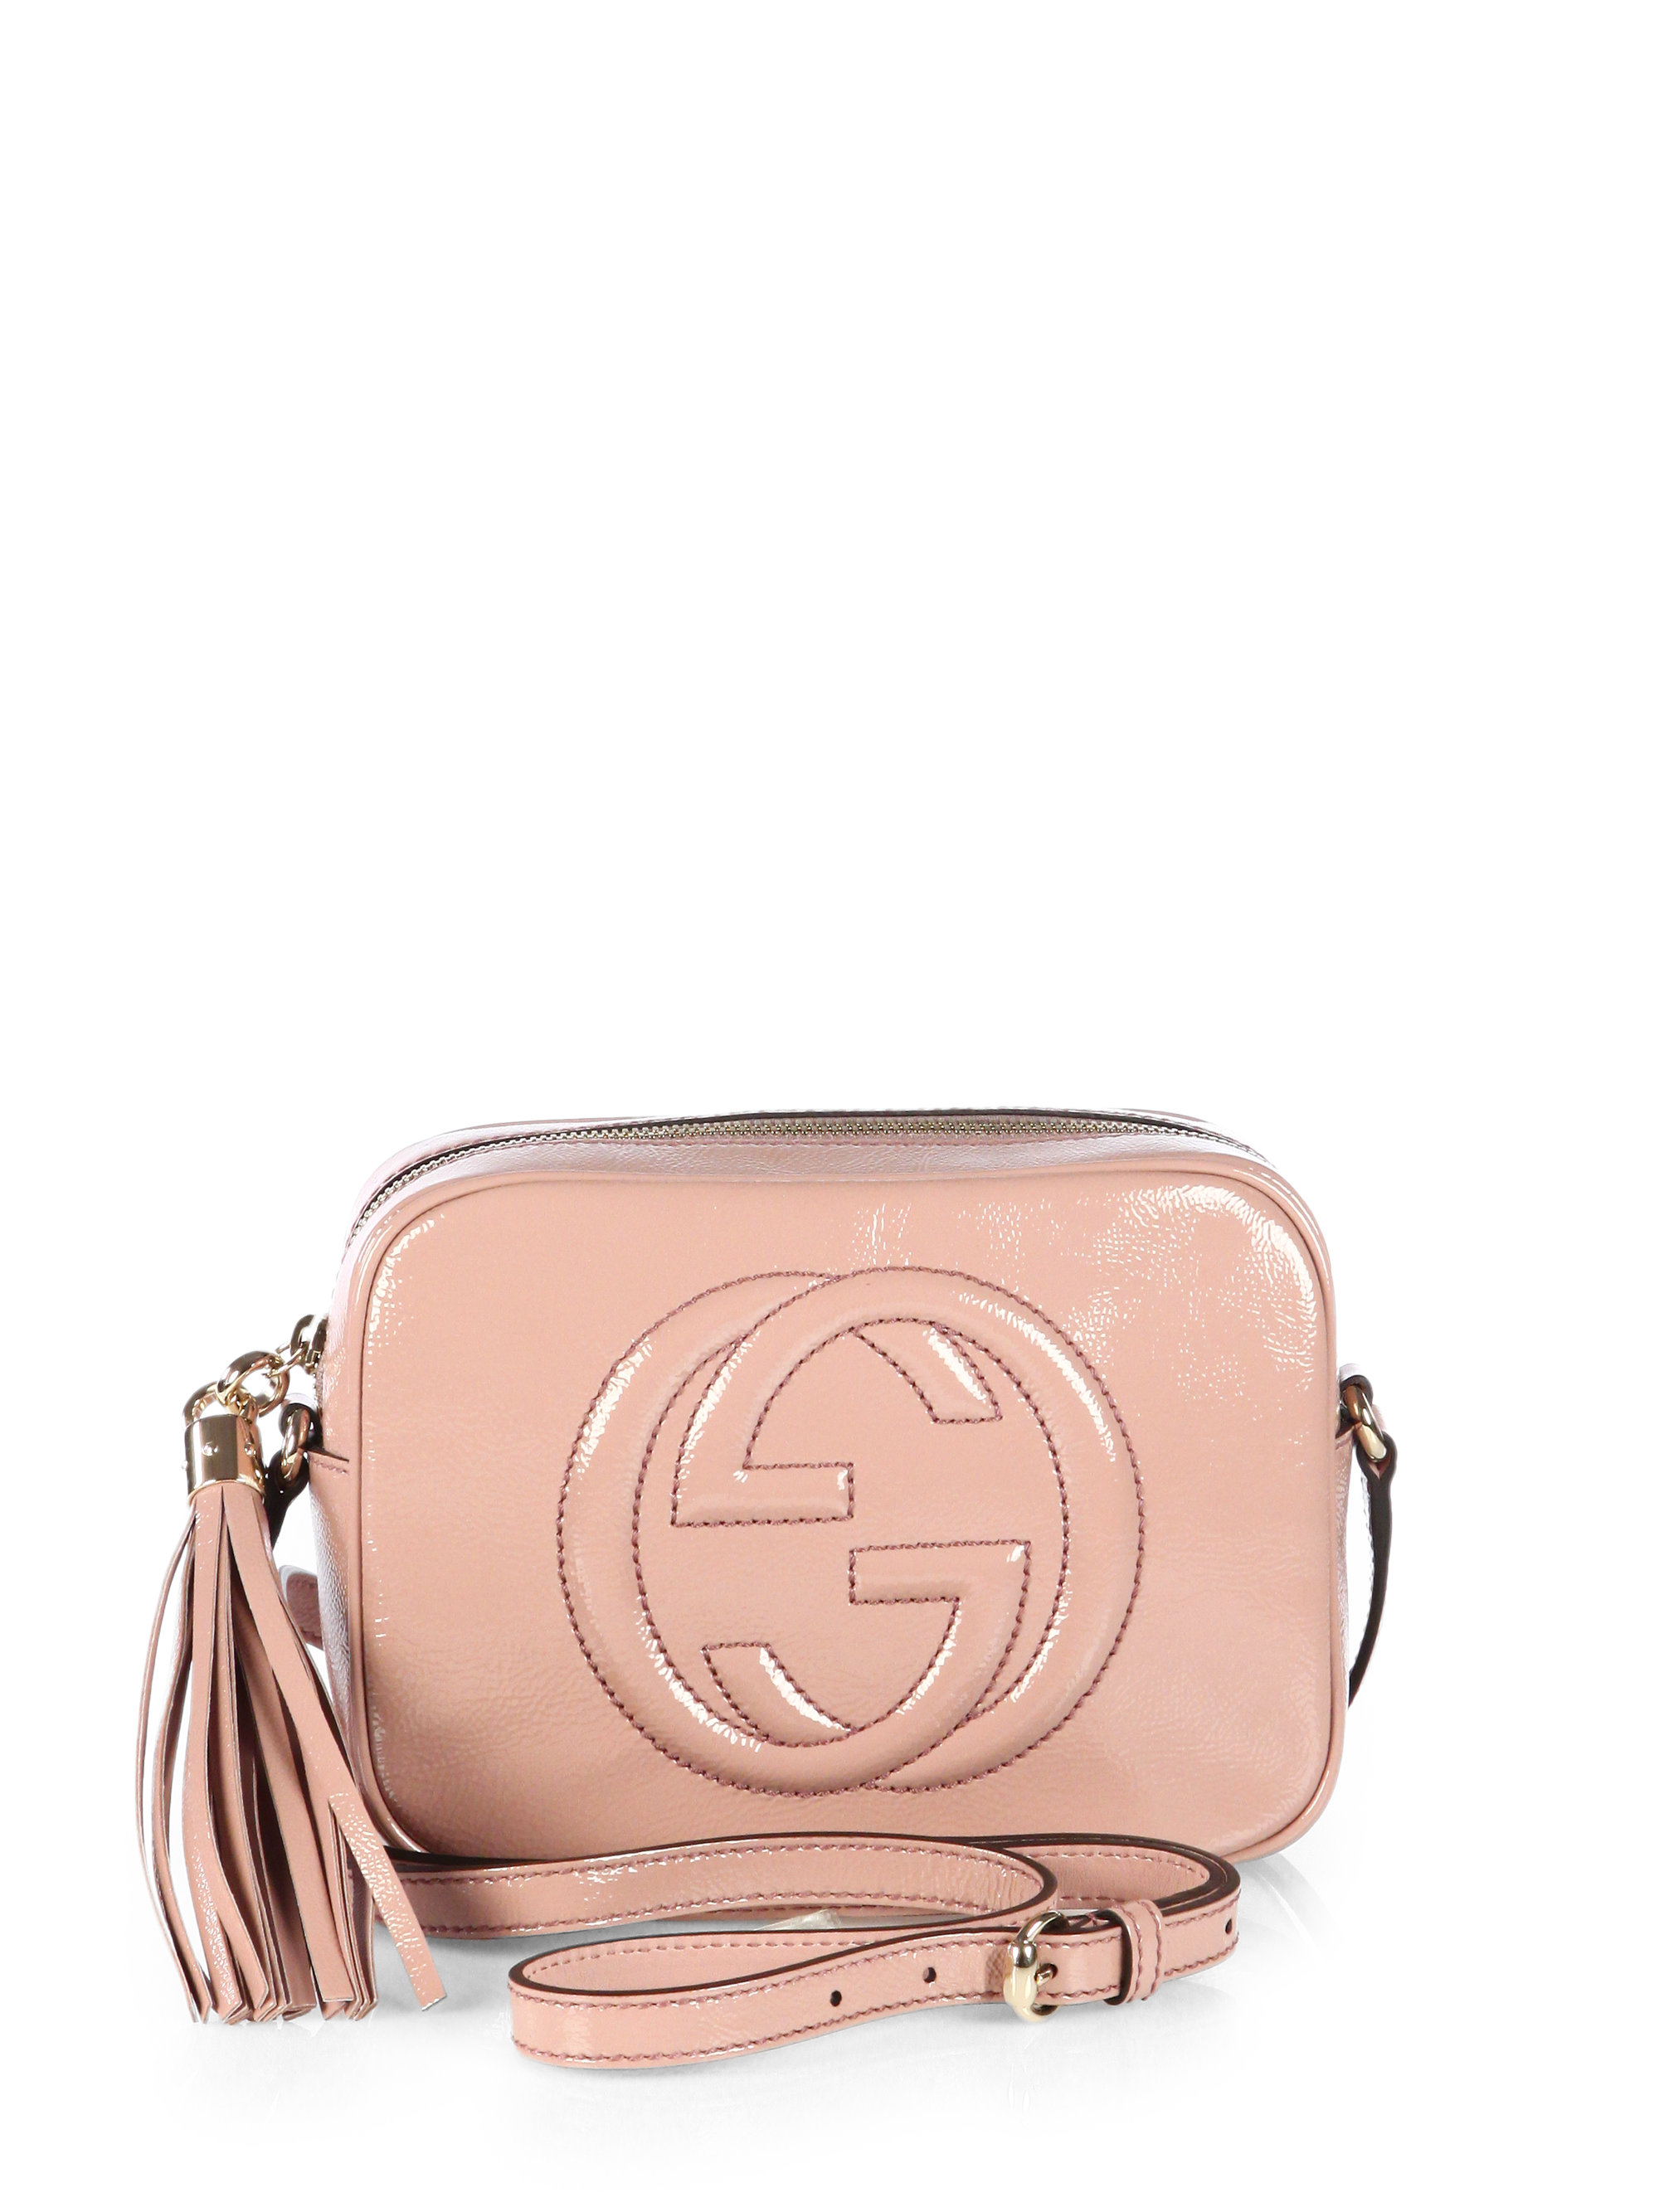 gå på indkøb vinden er stærk indre Gucci Soho Patent Leather Disco Bag in Pink | Lyst